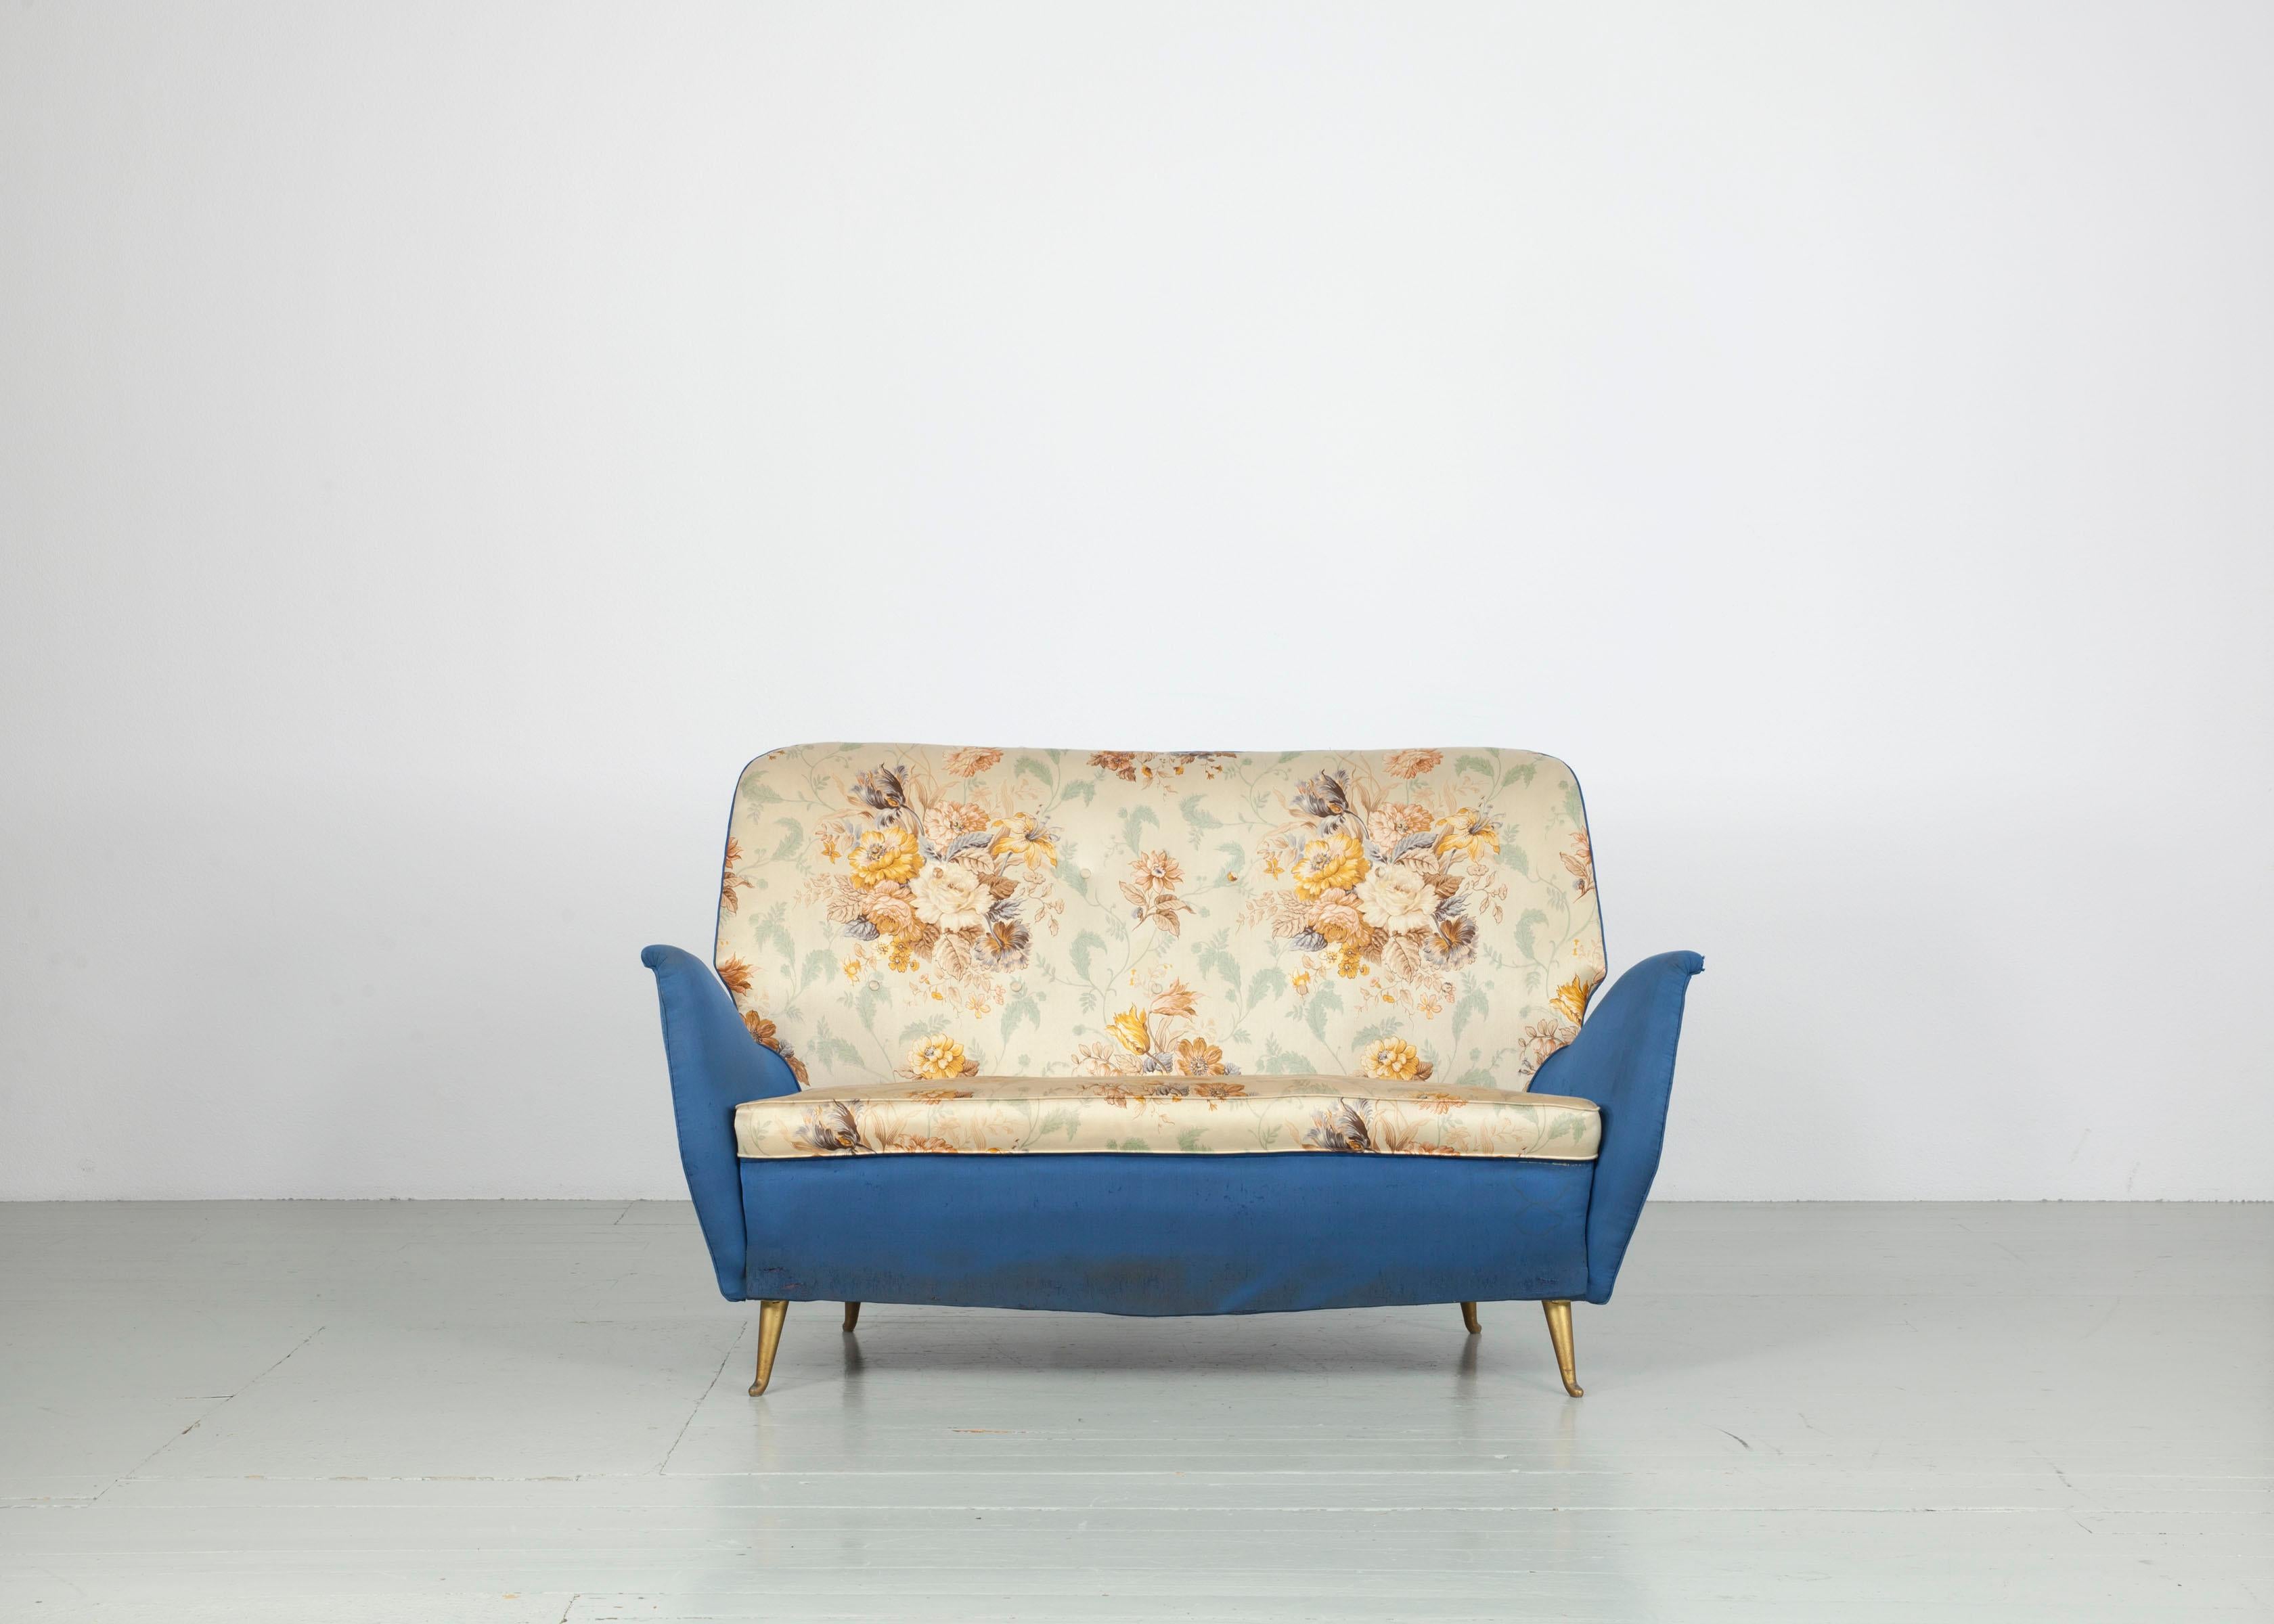 Dieses Sofa wurde in den 1950er Jahren in Italien von I.S.A. Bergamo hergestellt. Das Sofa ist mit blauem und cremefarbenem Stoff gepolstert und hat ein Blumenmotiv auf Sitz und Rückenlehne. Der Korpus des Möbelstücks ruht auf feinen, goldfarbenen